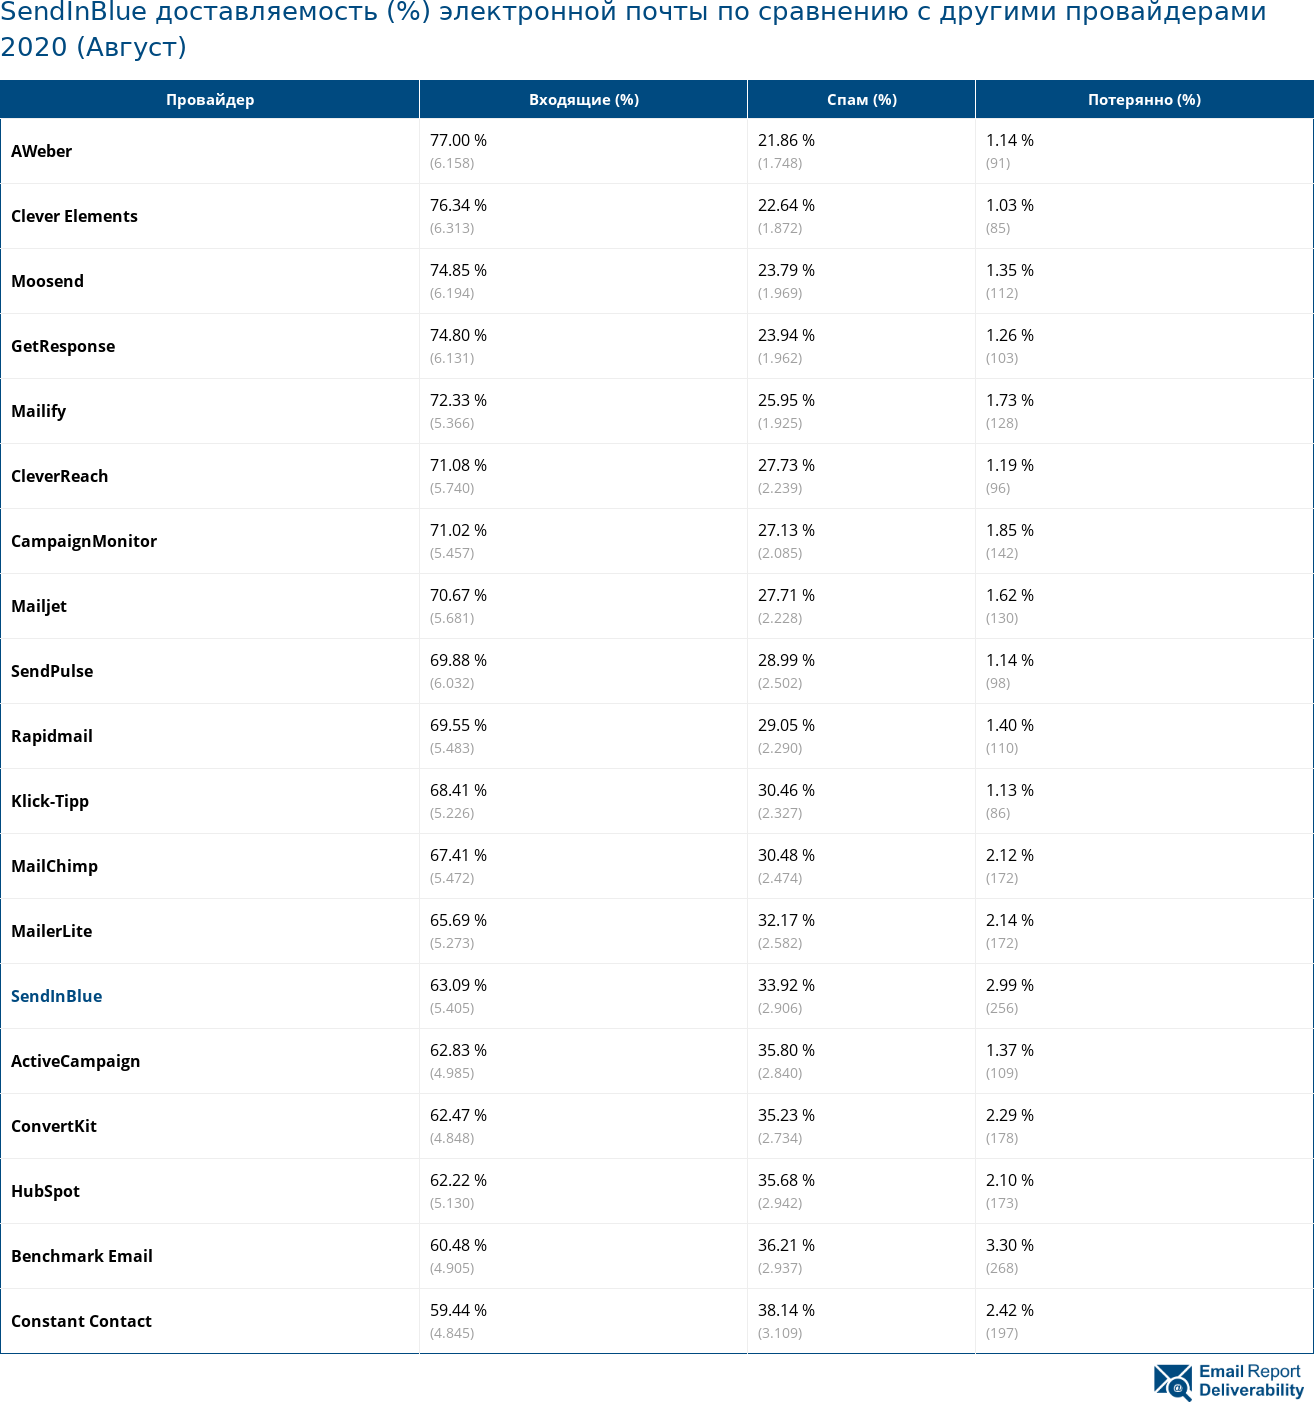 SendInBlue доставляемость (%) электронной почты по сравнению с другими провайдерами 2020 (Август)